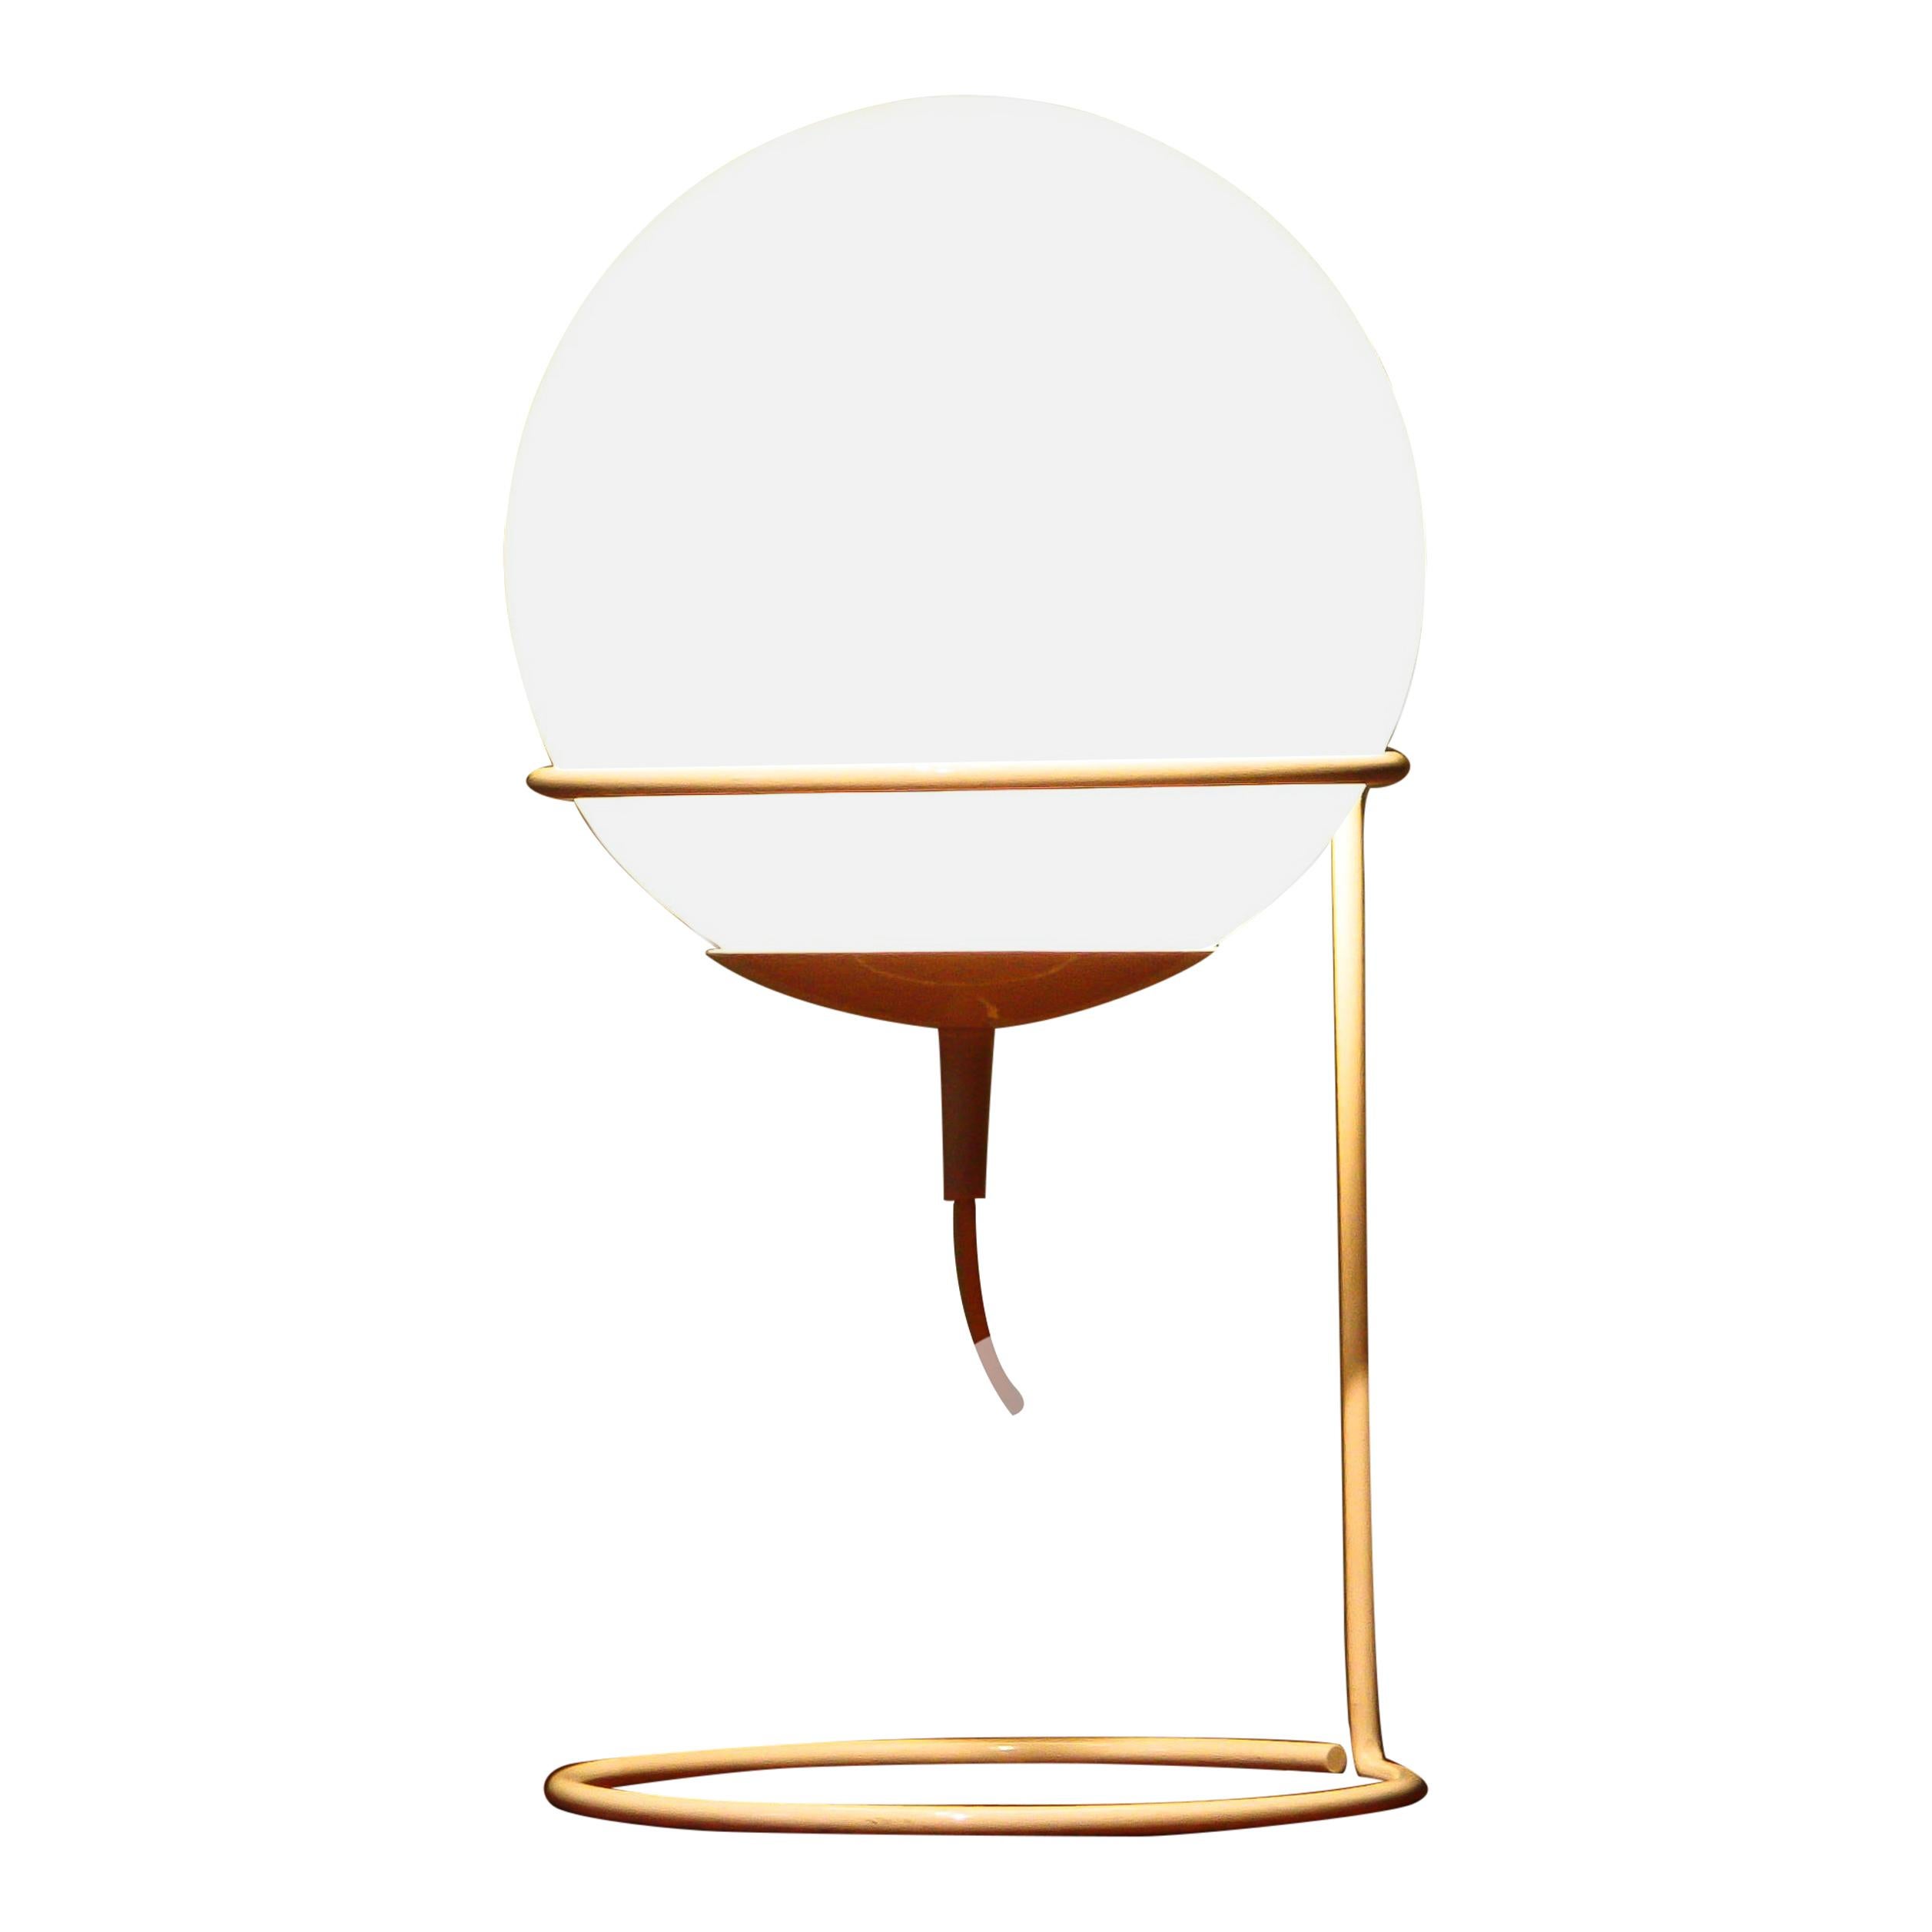 Beautiful ball-shaped glass table lamp 